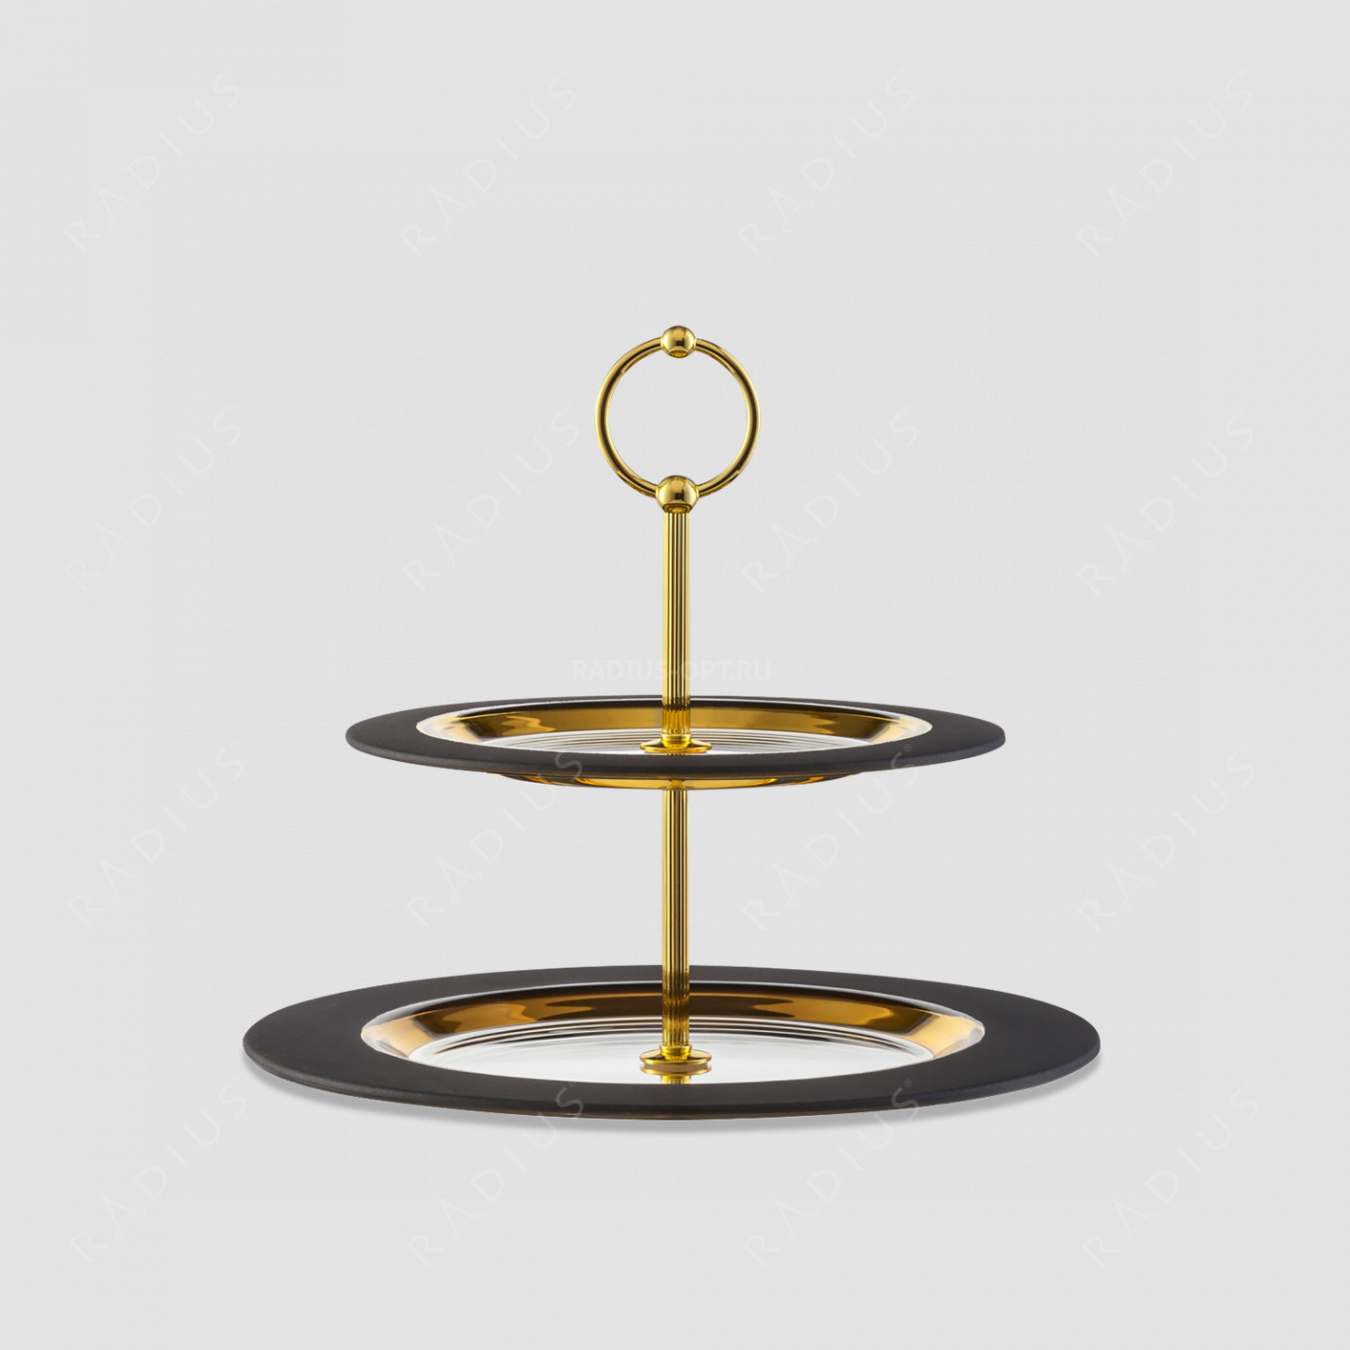 Этажерка для пирожных Gold, размер: 32 х 25 см, материал: бессвинцовый хрусталь, цвет: черный/золото, серия Cosmo, EISCH, Германия